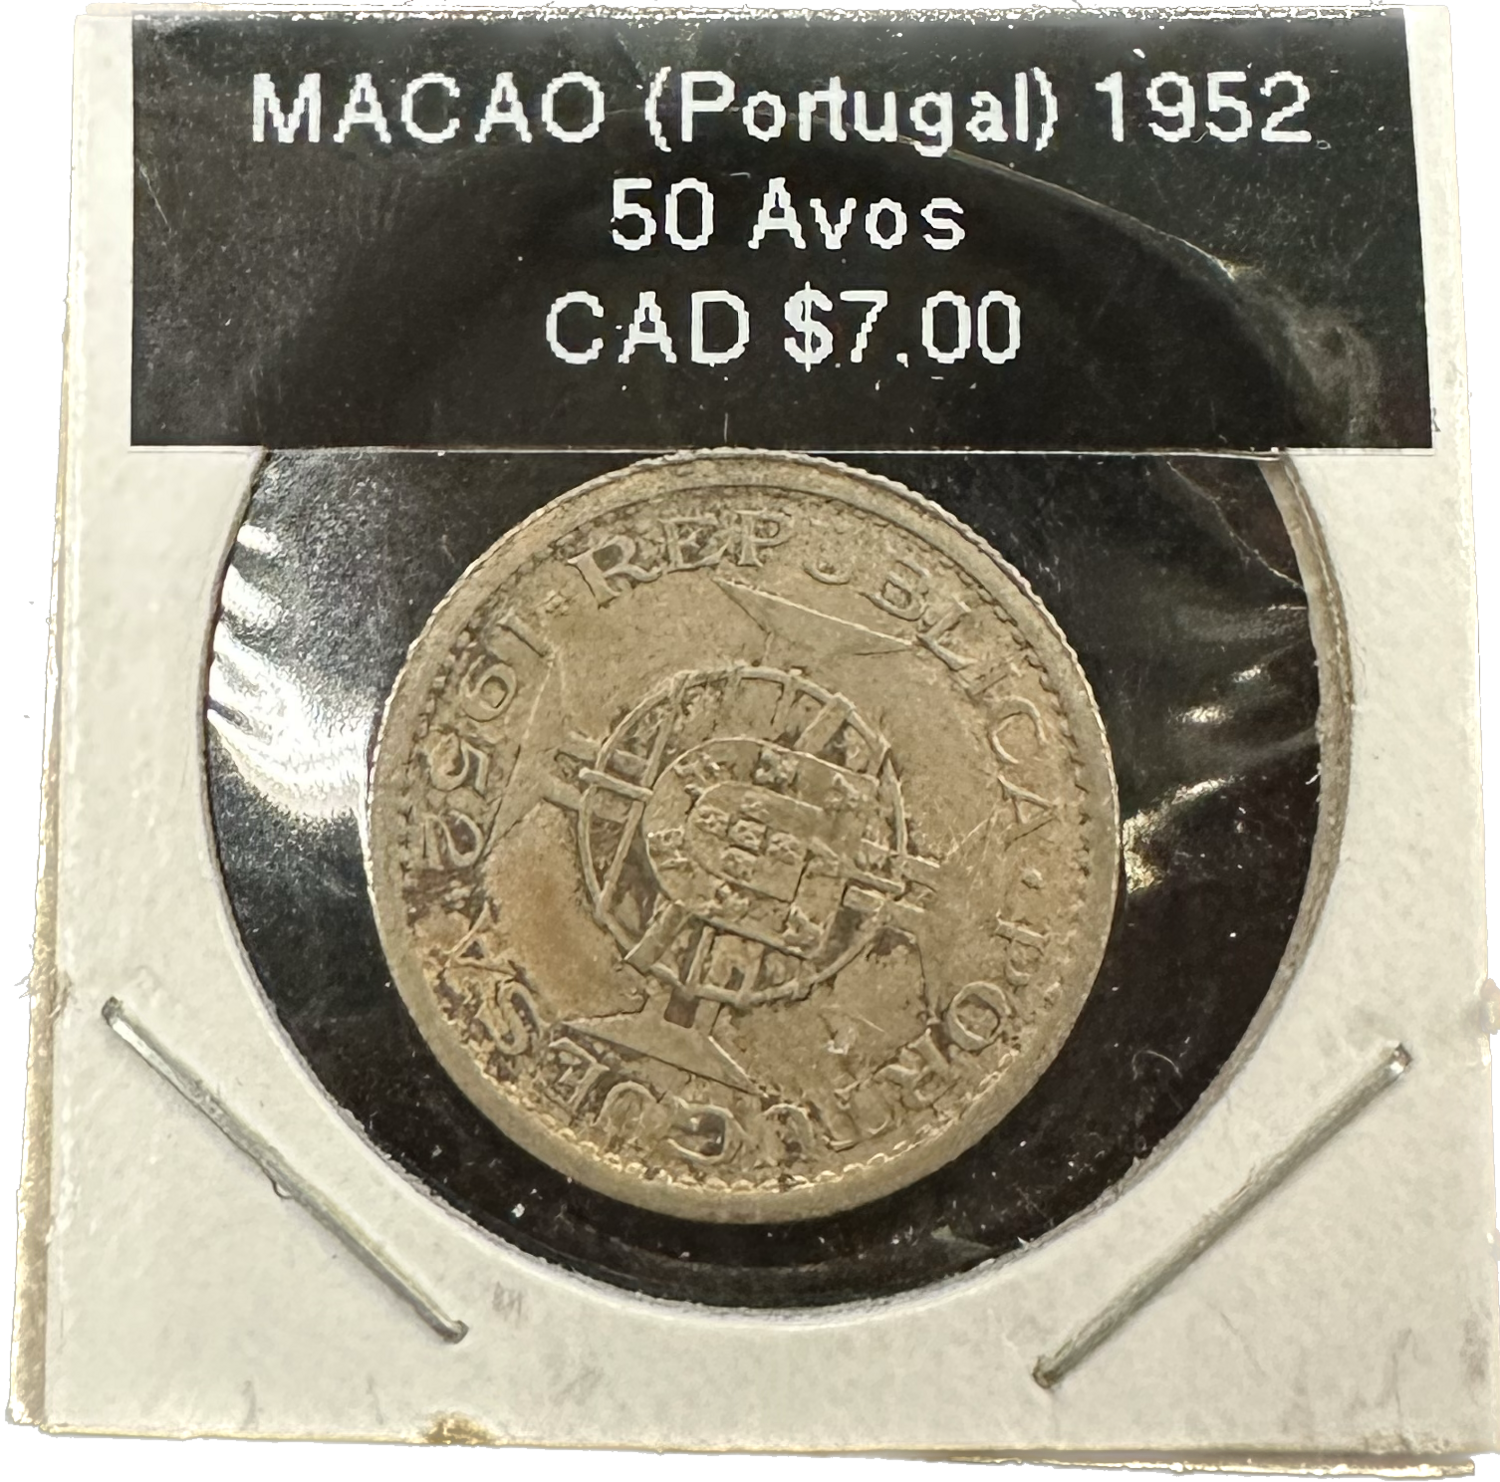 Macau (Portugal) 50 Avos 1952 Coin